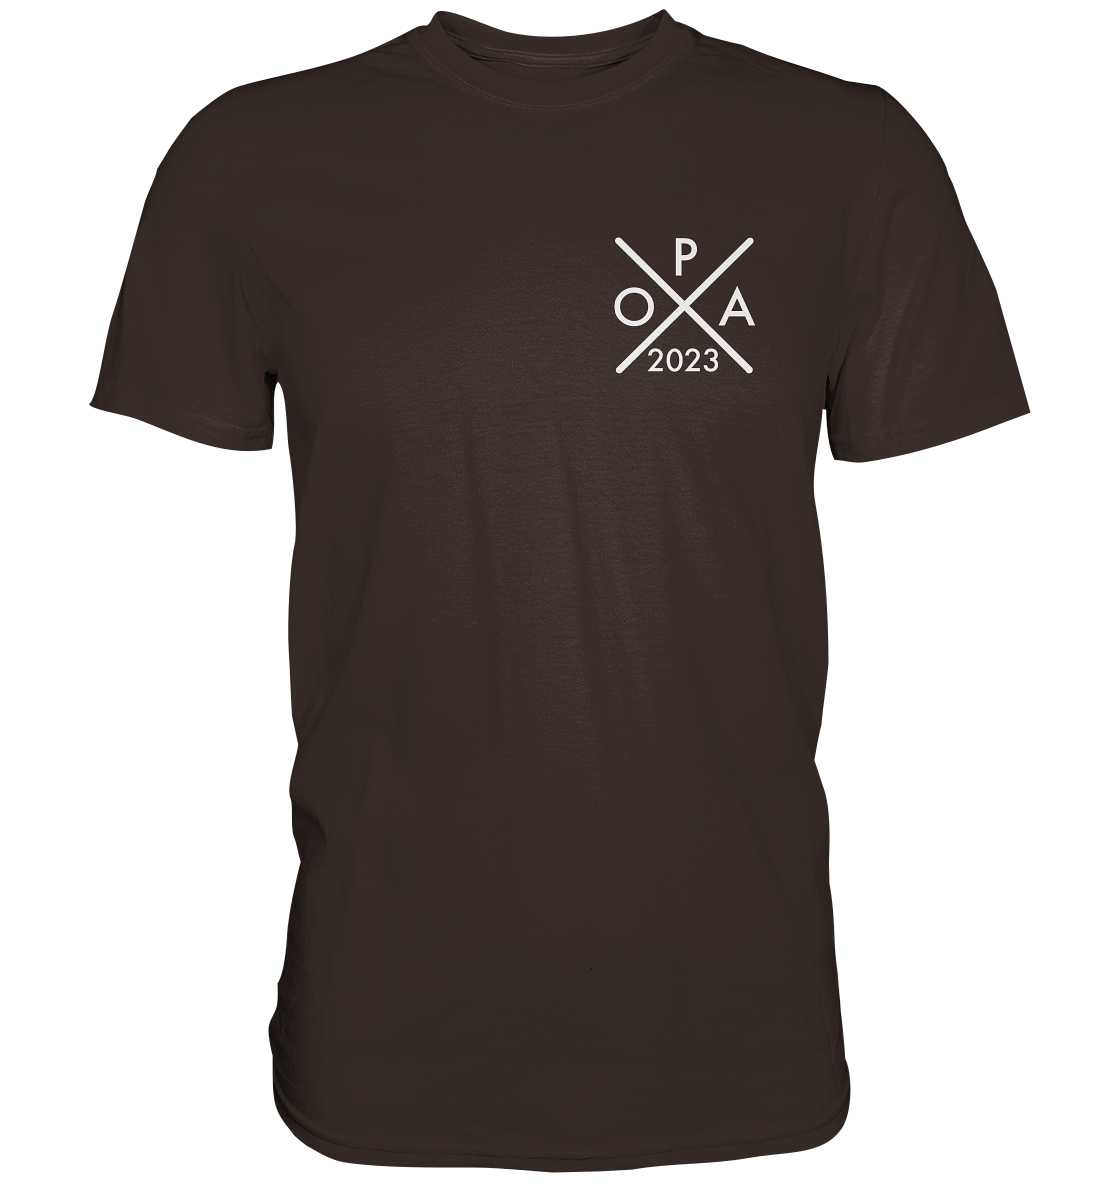 Ein Opa T-Shirt mit minimalistischem Design von ShirtDesire. Personalisierter Druck, hochwertige Materialien. Perfekt für stolze Opas, die ihren eigenen Stil ausdrücken möchten.